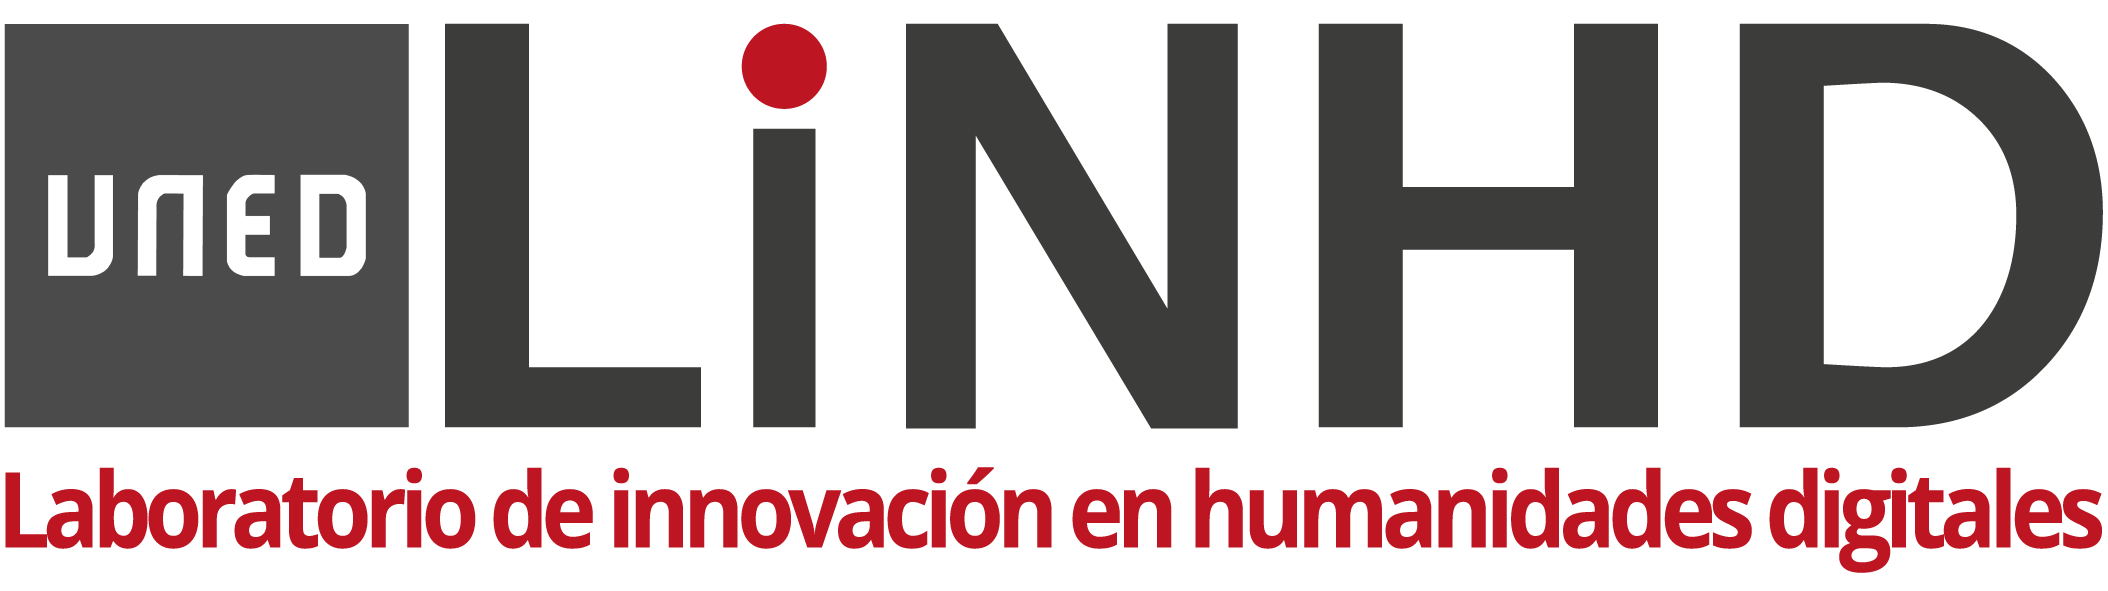 Laboratorio de Innovación en Humanidades Digitales (LINHD), UNED, Madrid (Spain)